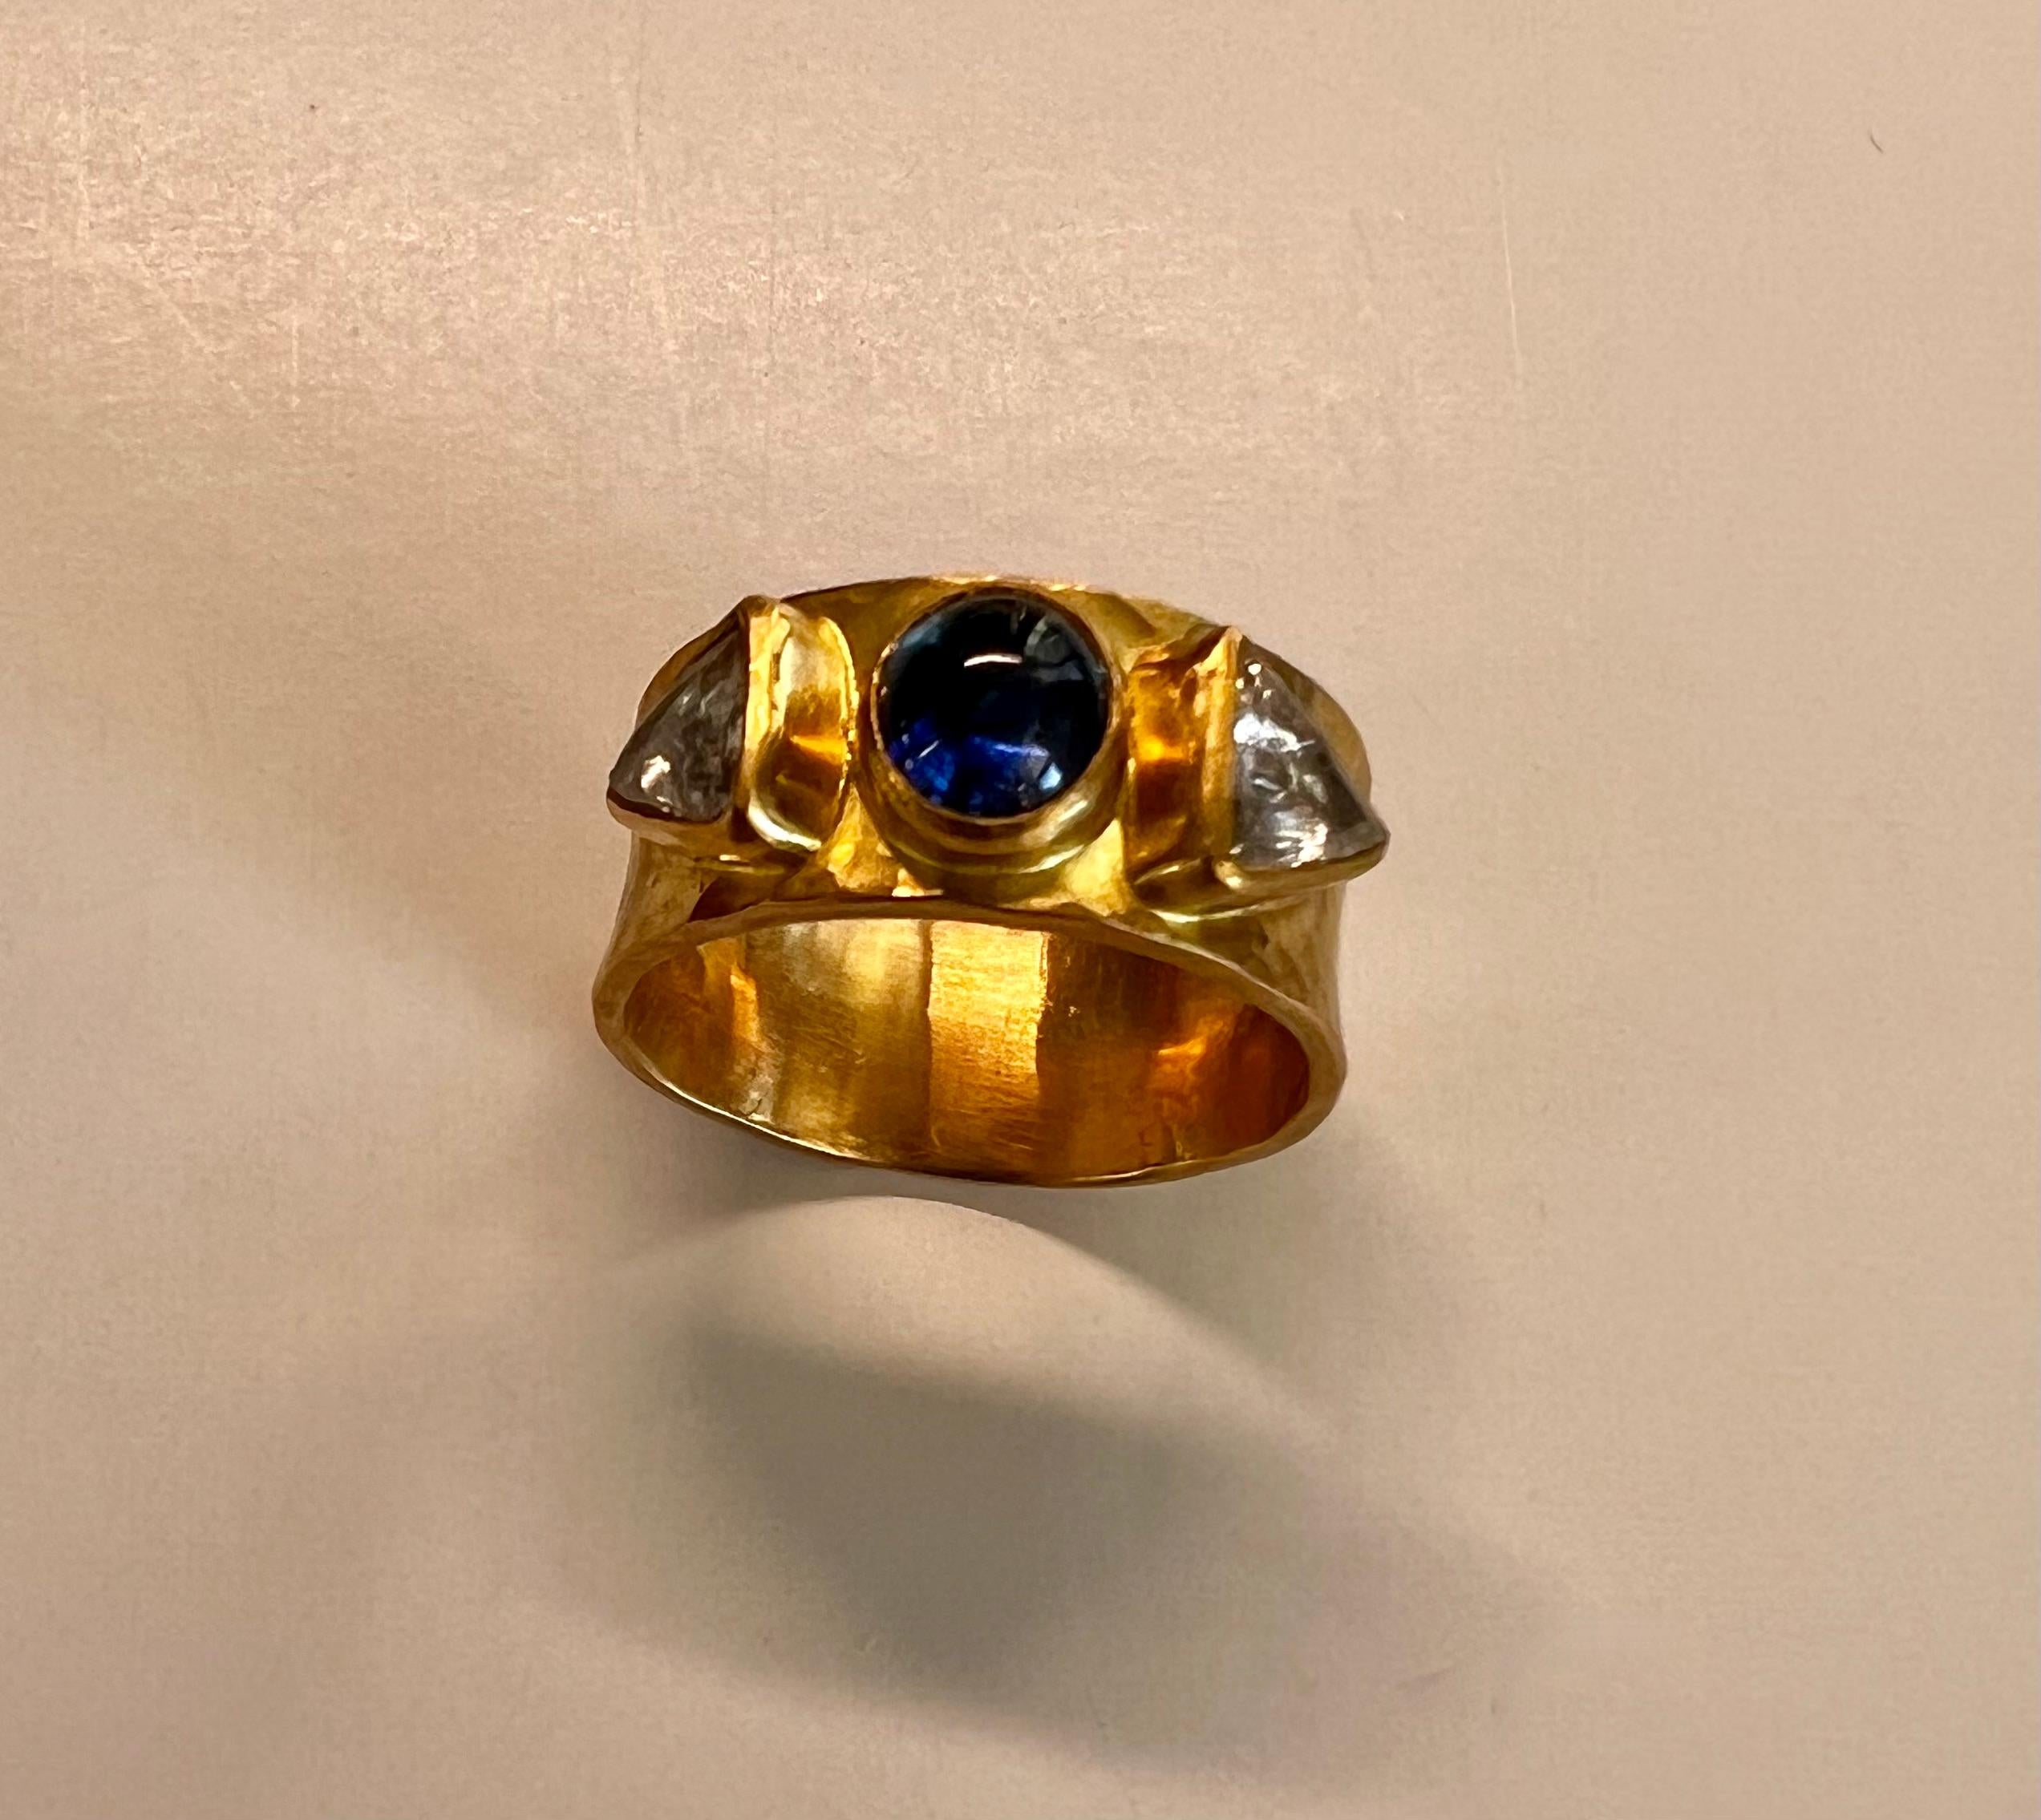 Ring aus 20 und 22 Karat mit ovalem blauem Saphir-Cabochon und Macle-Diamanten, eingefasst in ein gehämmertes Band.
Ein Macle ist eine kristalline Form, ein Zwillingskristall oder ein Doppelkristall, wie er in oktaedrischen (8) Kristallen oder